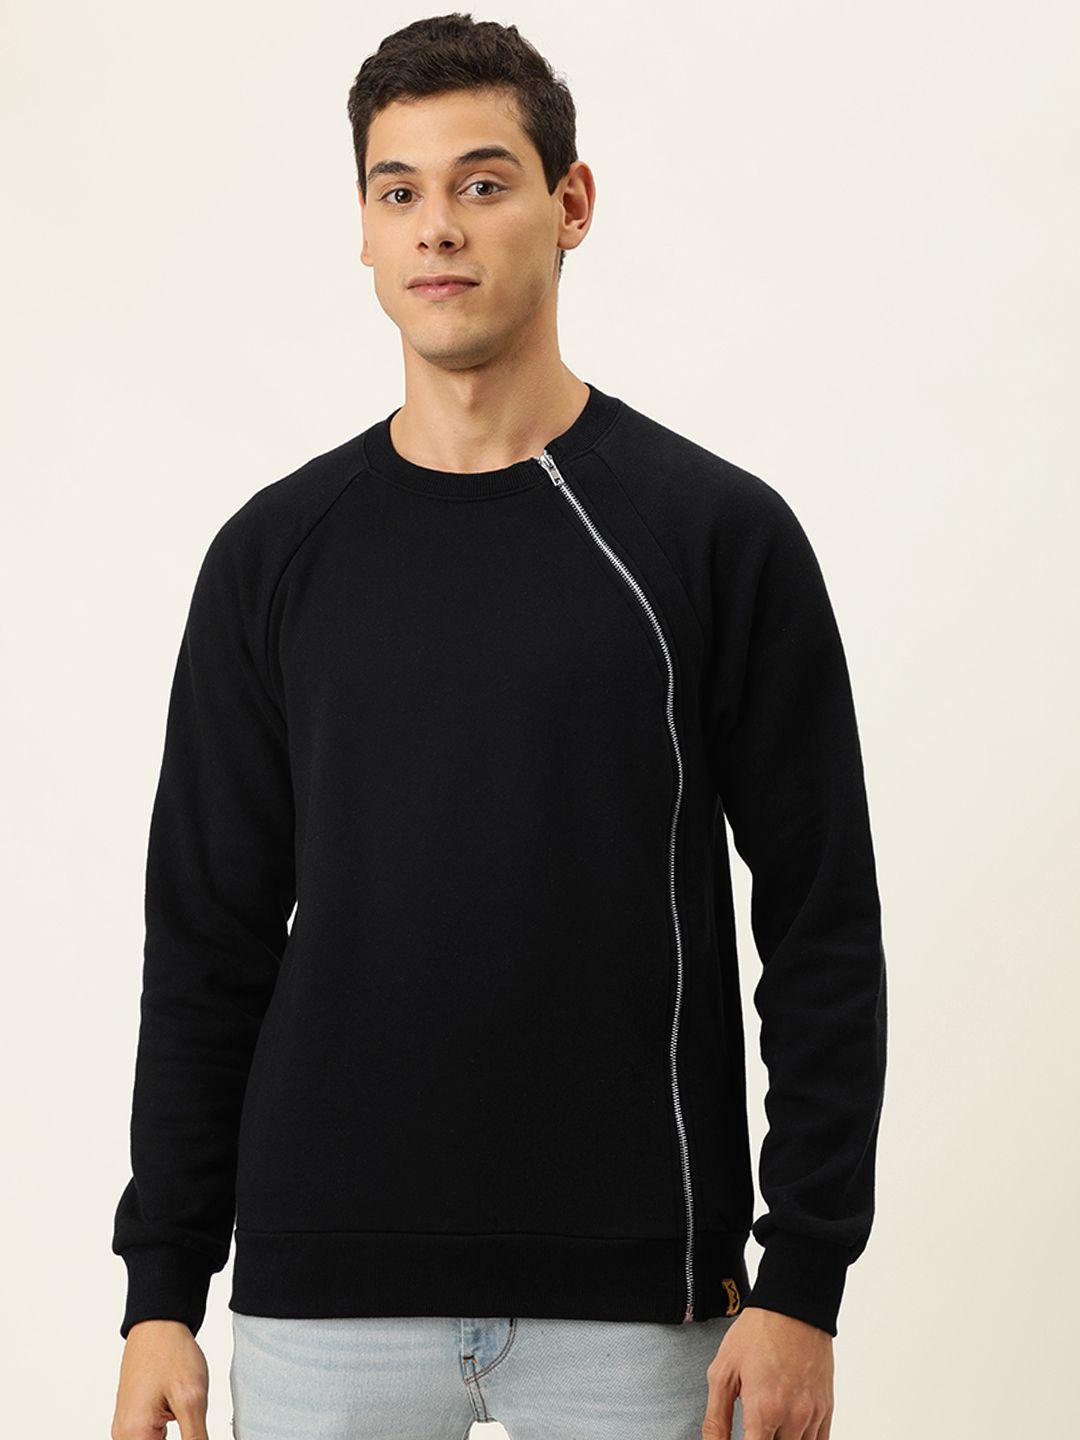 campus-sutra-men-black-solid-sweatshirt